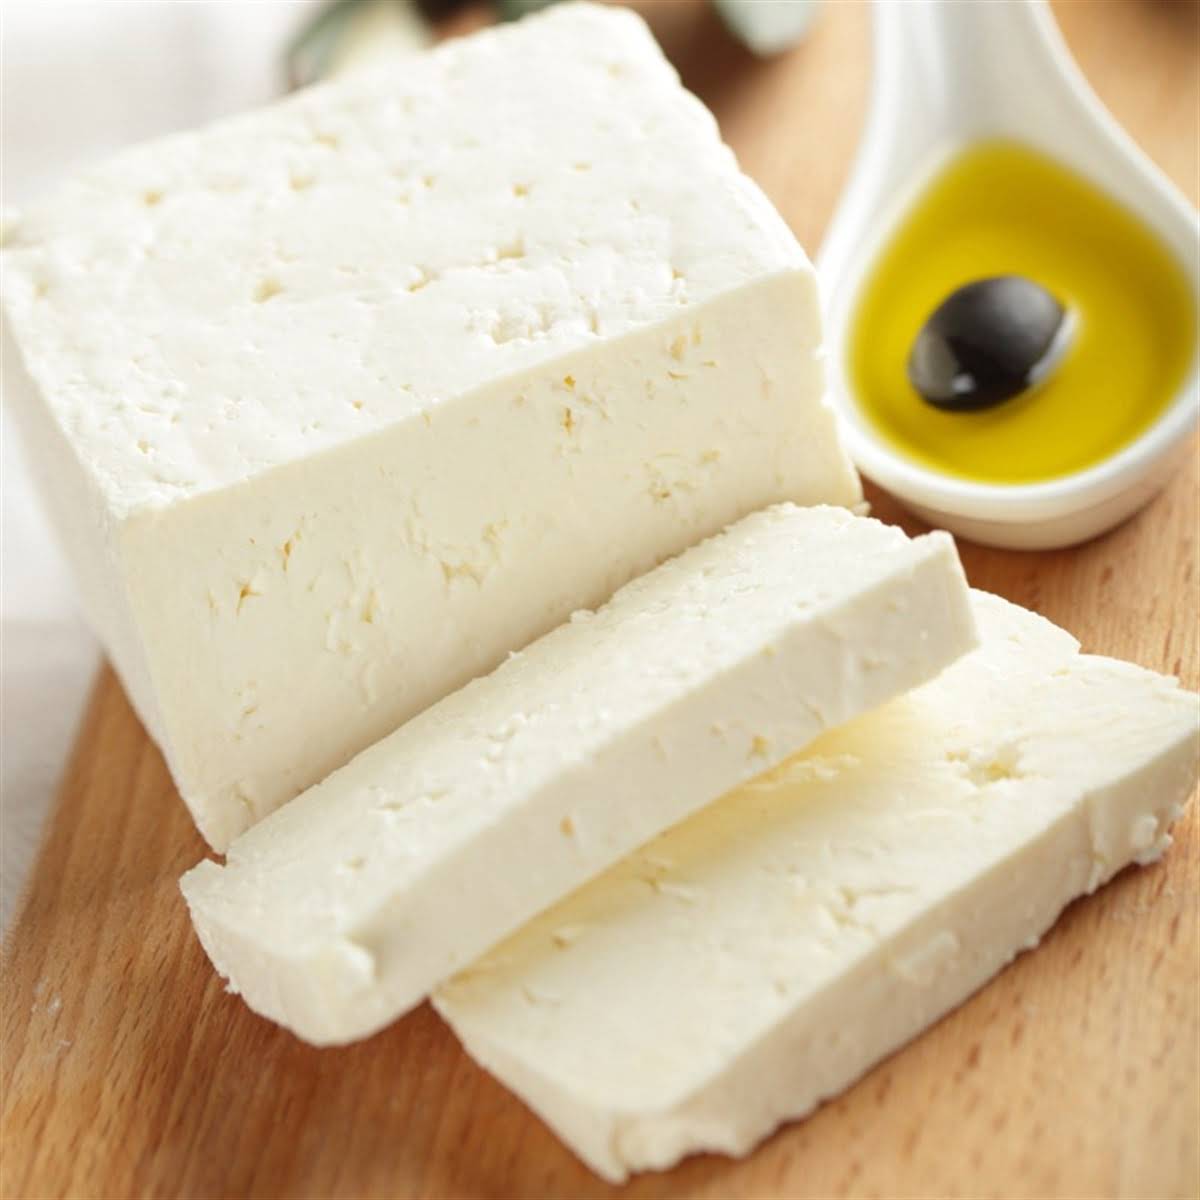 Tam yağlı beyaz peynir lokum tipi 20 kilogramlık teneke ambalajda Ersoy marka